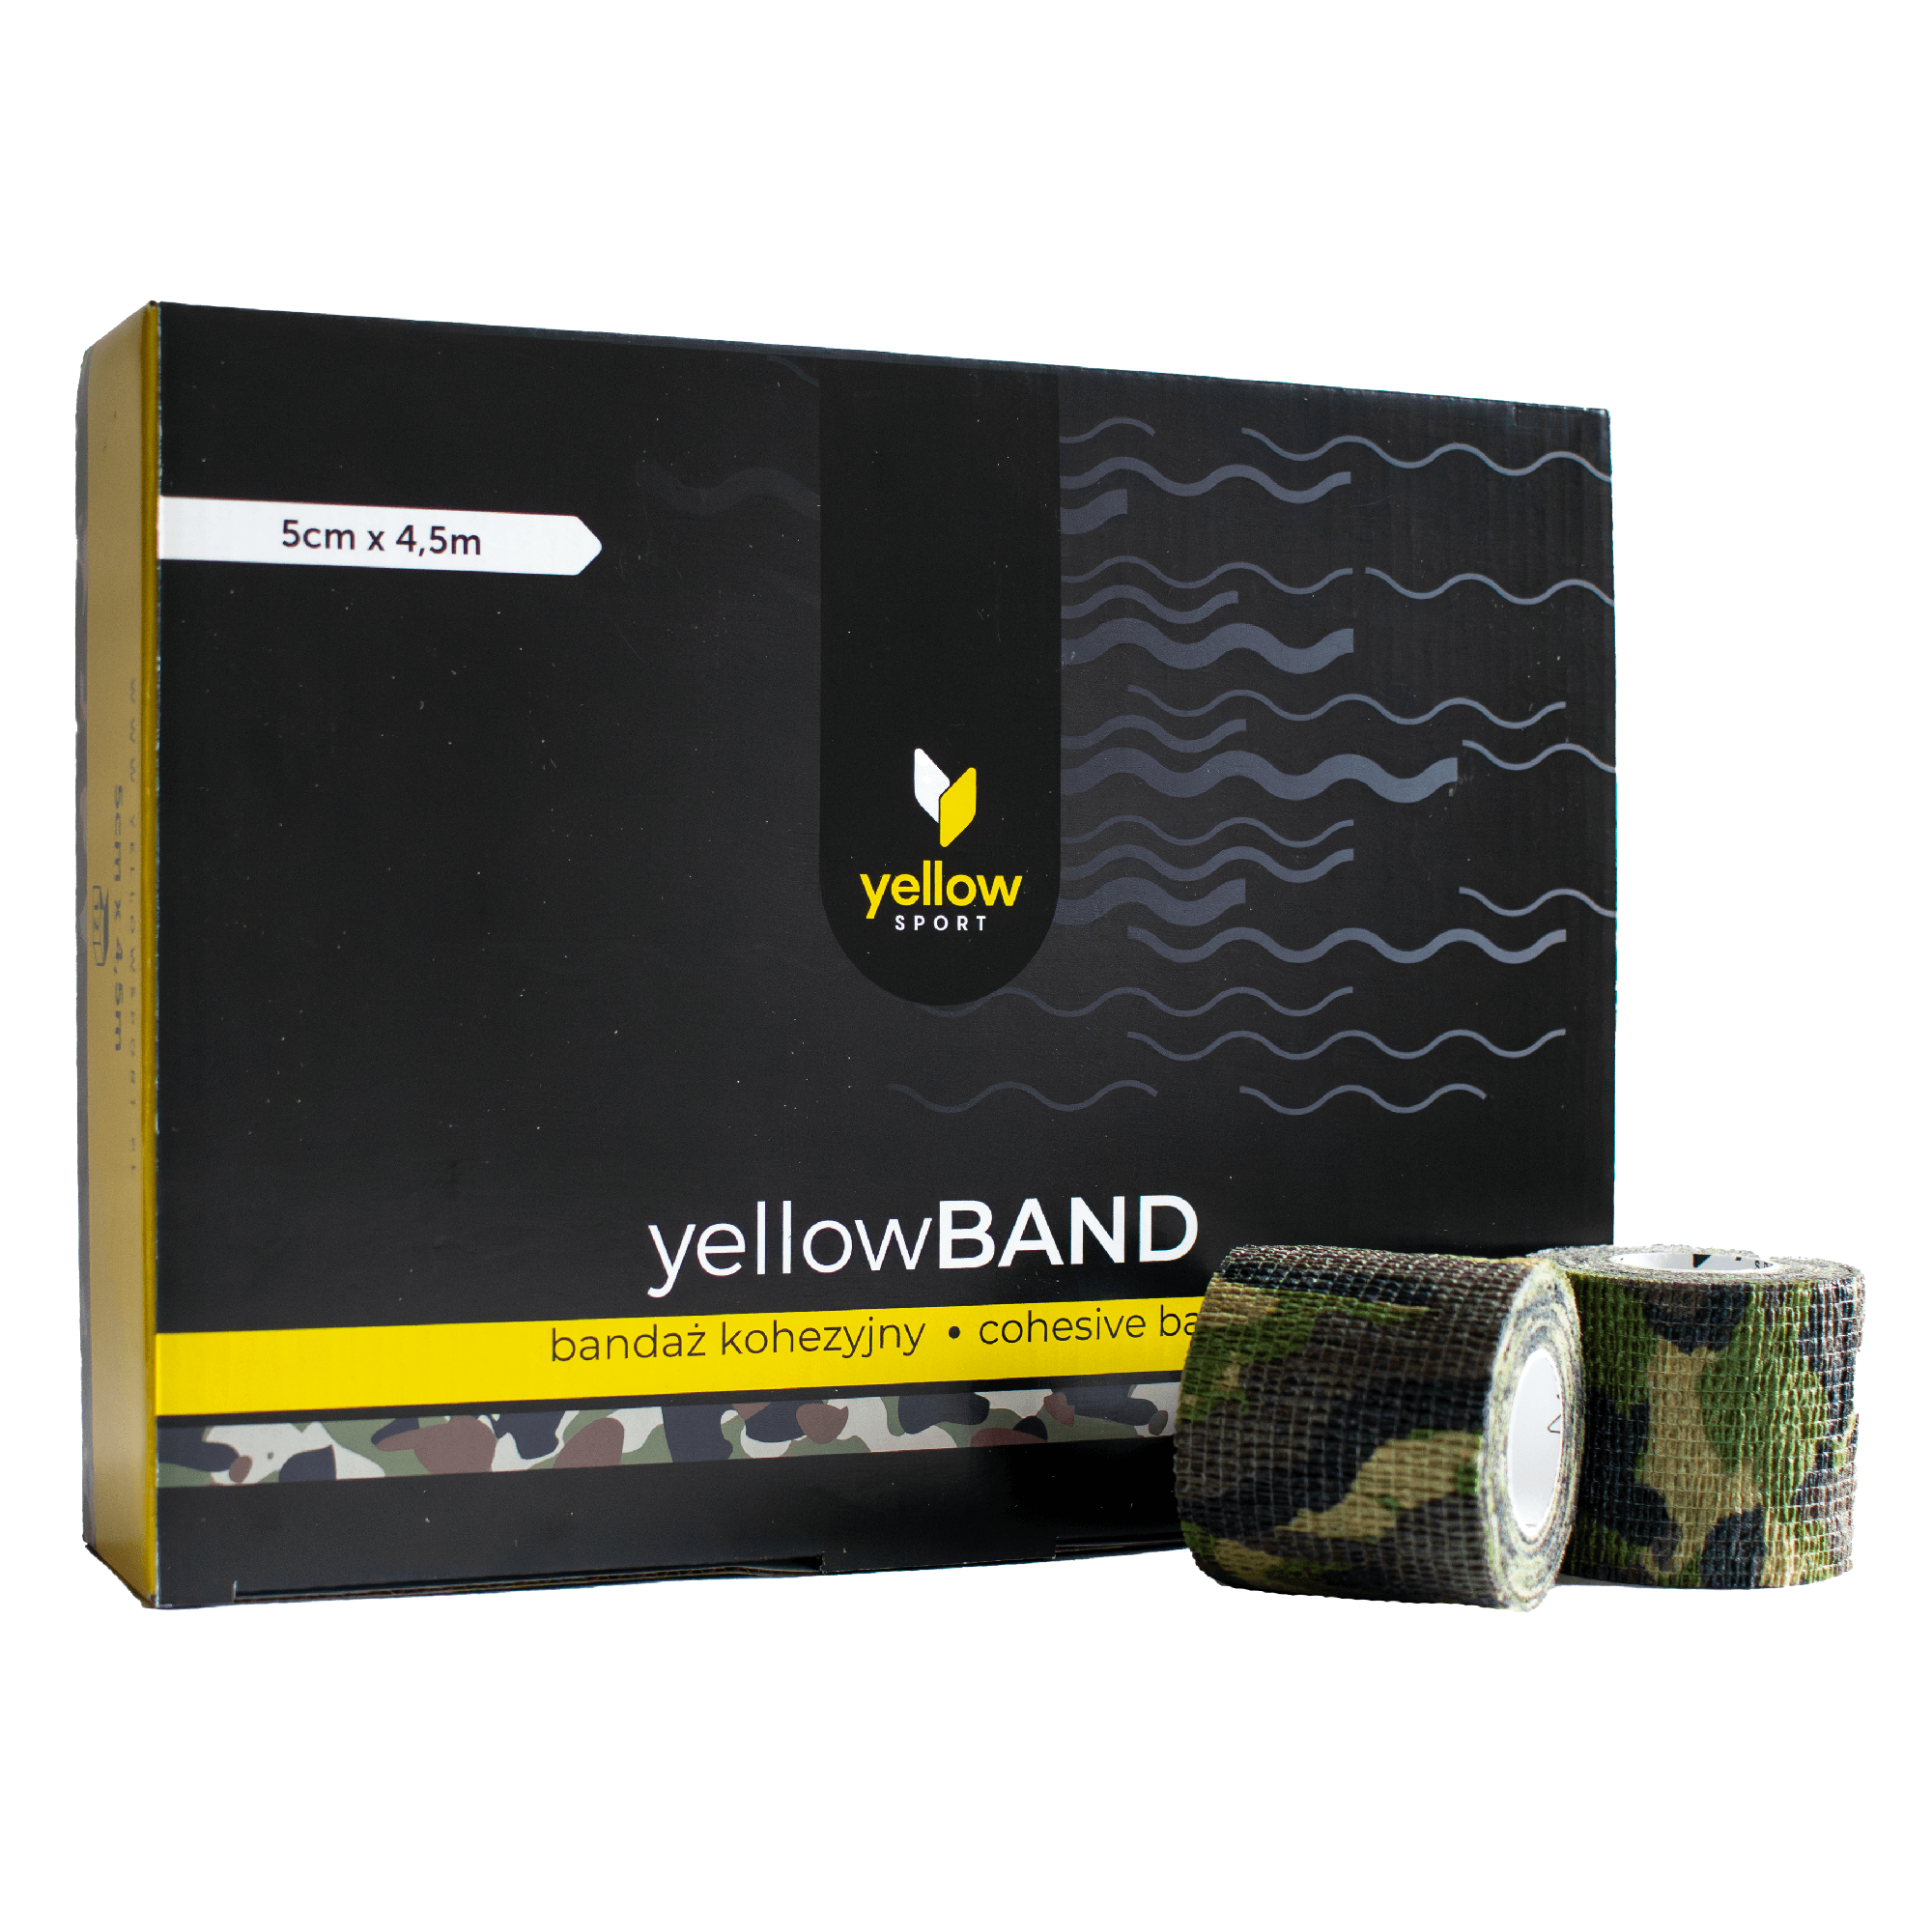 Bandaż kohezyjny yellowBAND - 5cm x 4,5m, zielony moro zestaw 12 szt.